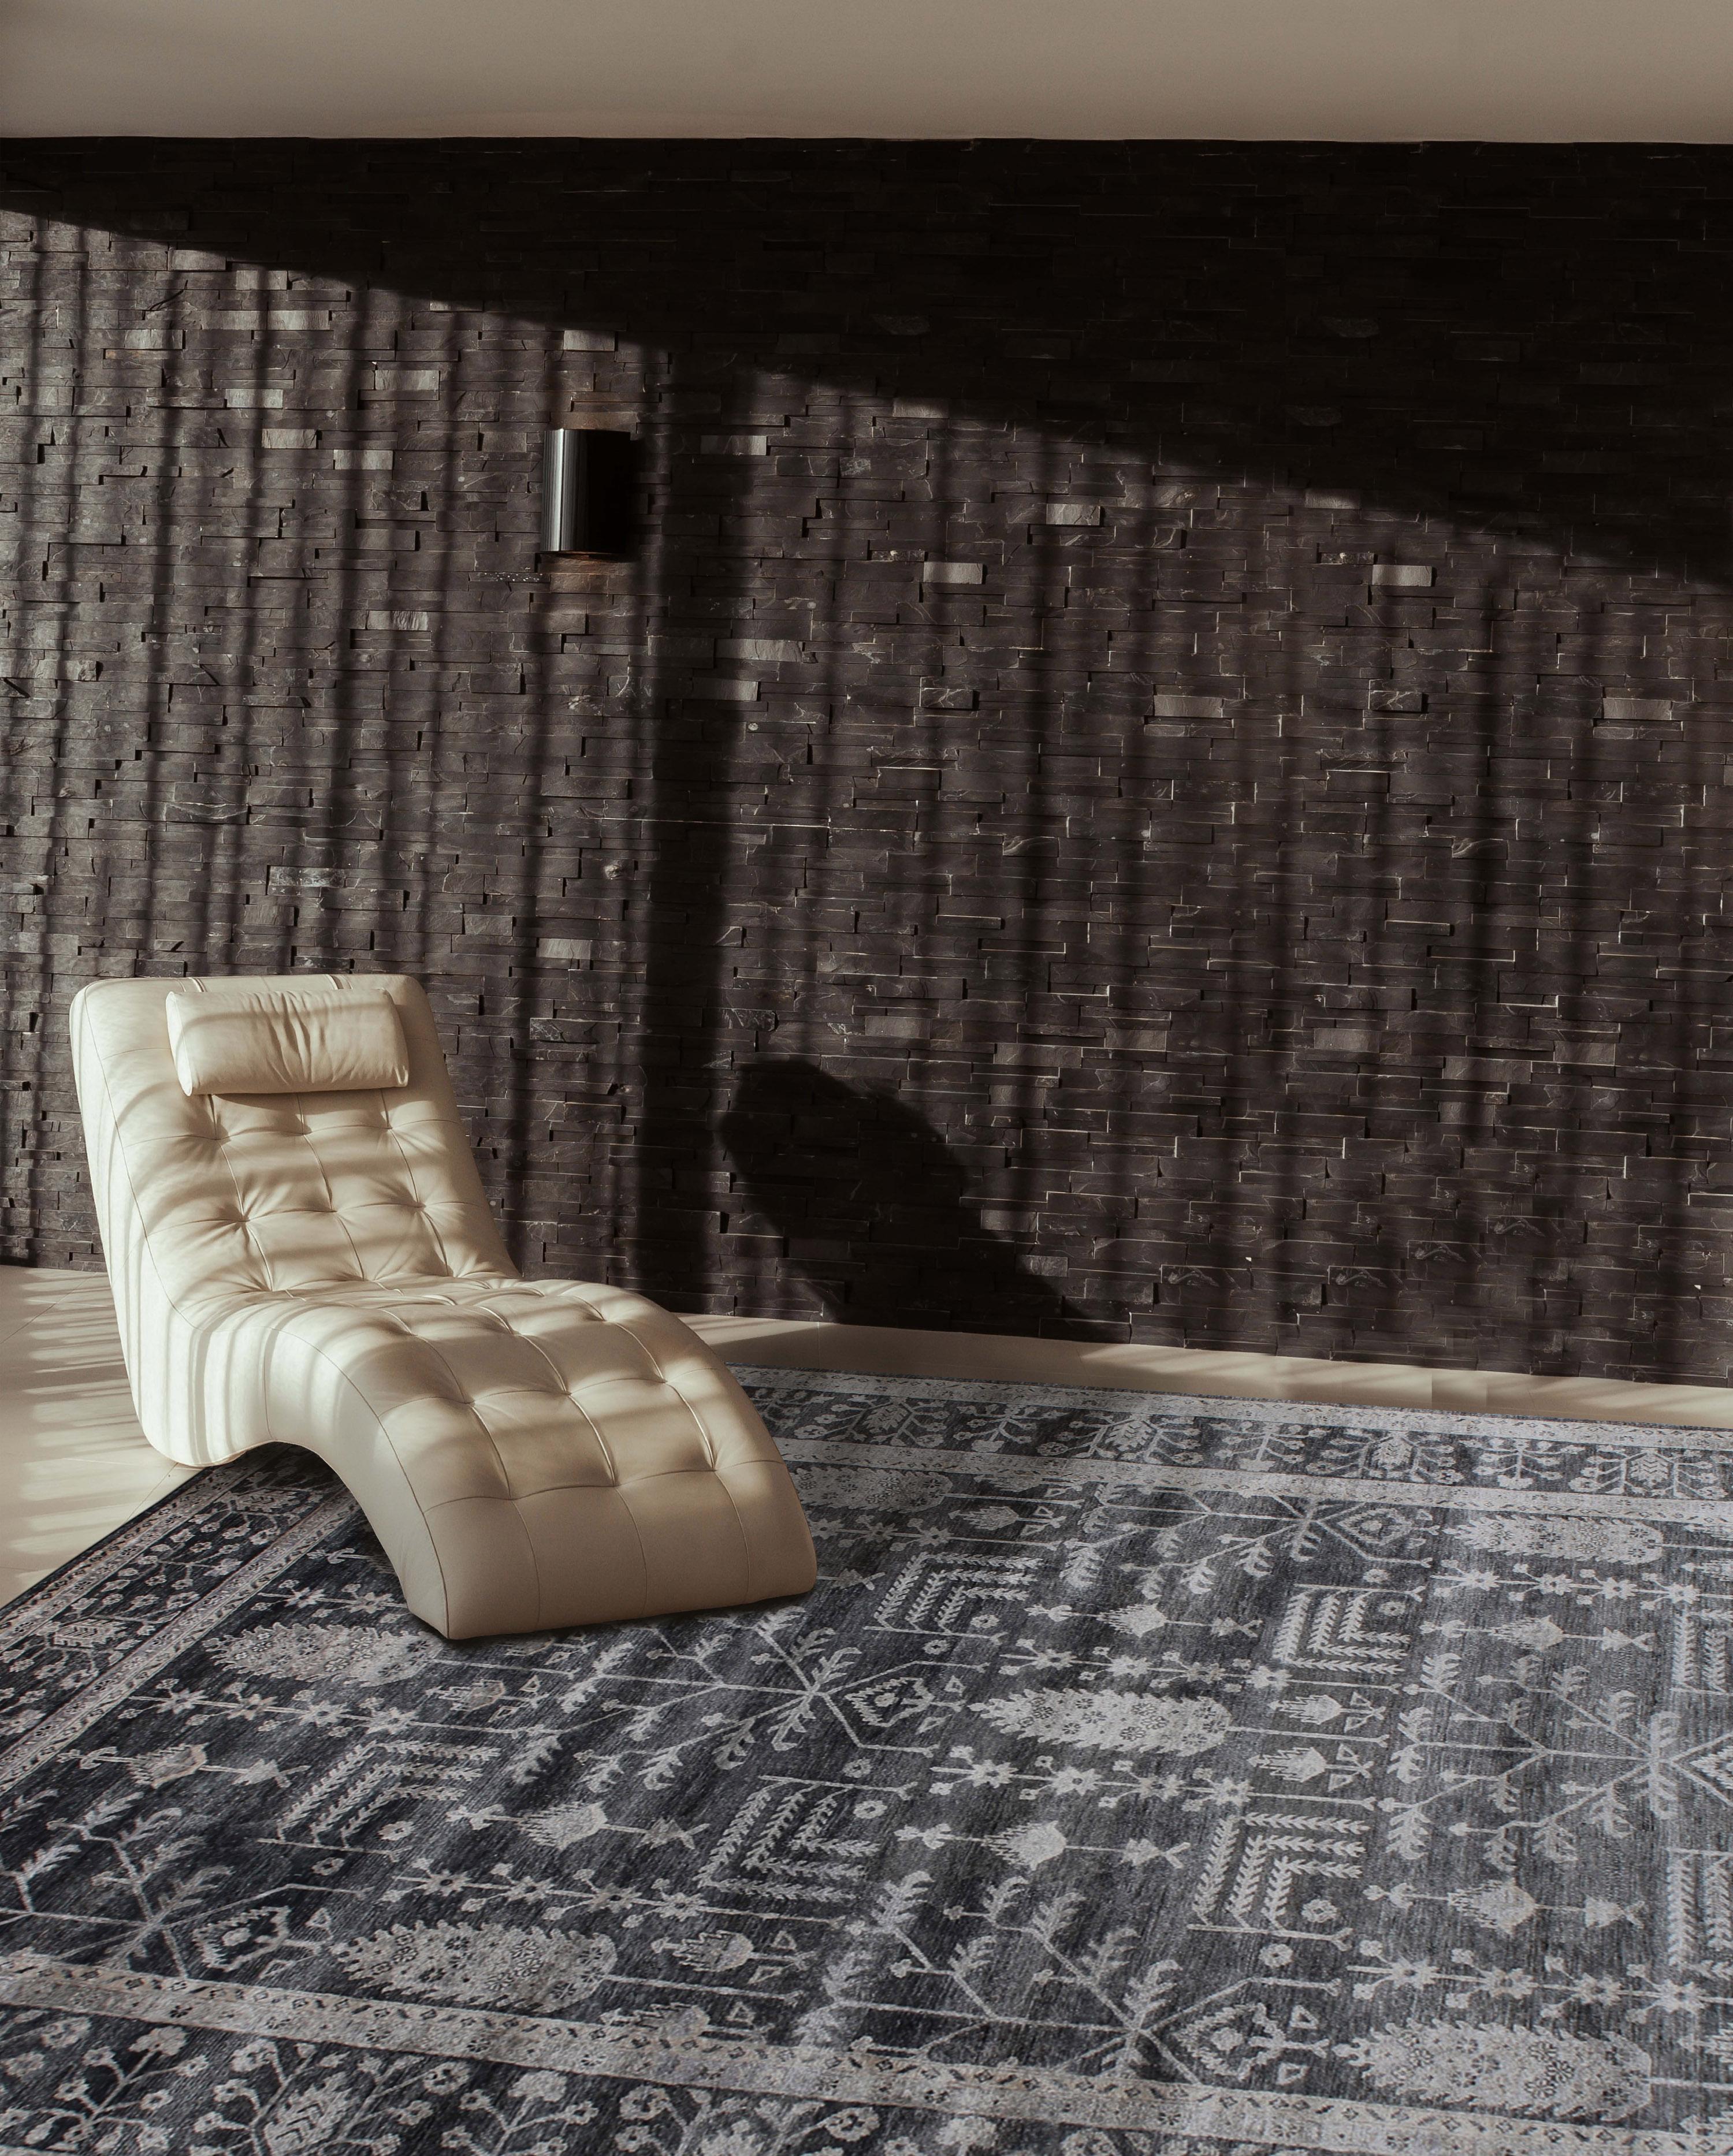 Die luxuriösen Teppiche der Collection'S Amberlynn zeichnen sich durch Schönheit und Eleganz aus und verleihen der Inneneinrichtung von Wohn- und Esszimmern eine neue und aufregende Dimension.

Diese unverwechselbare Kollektion feiner